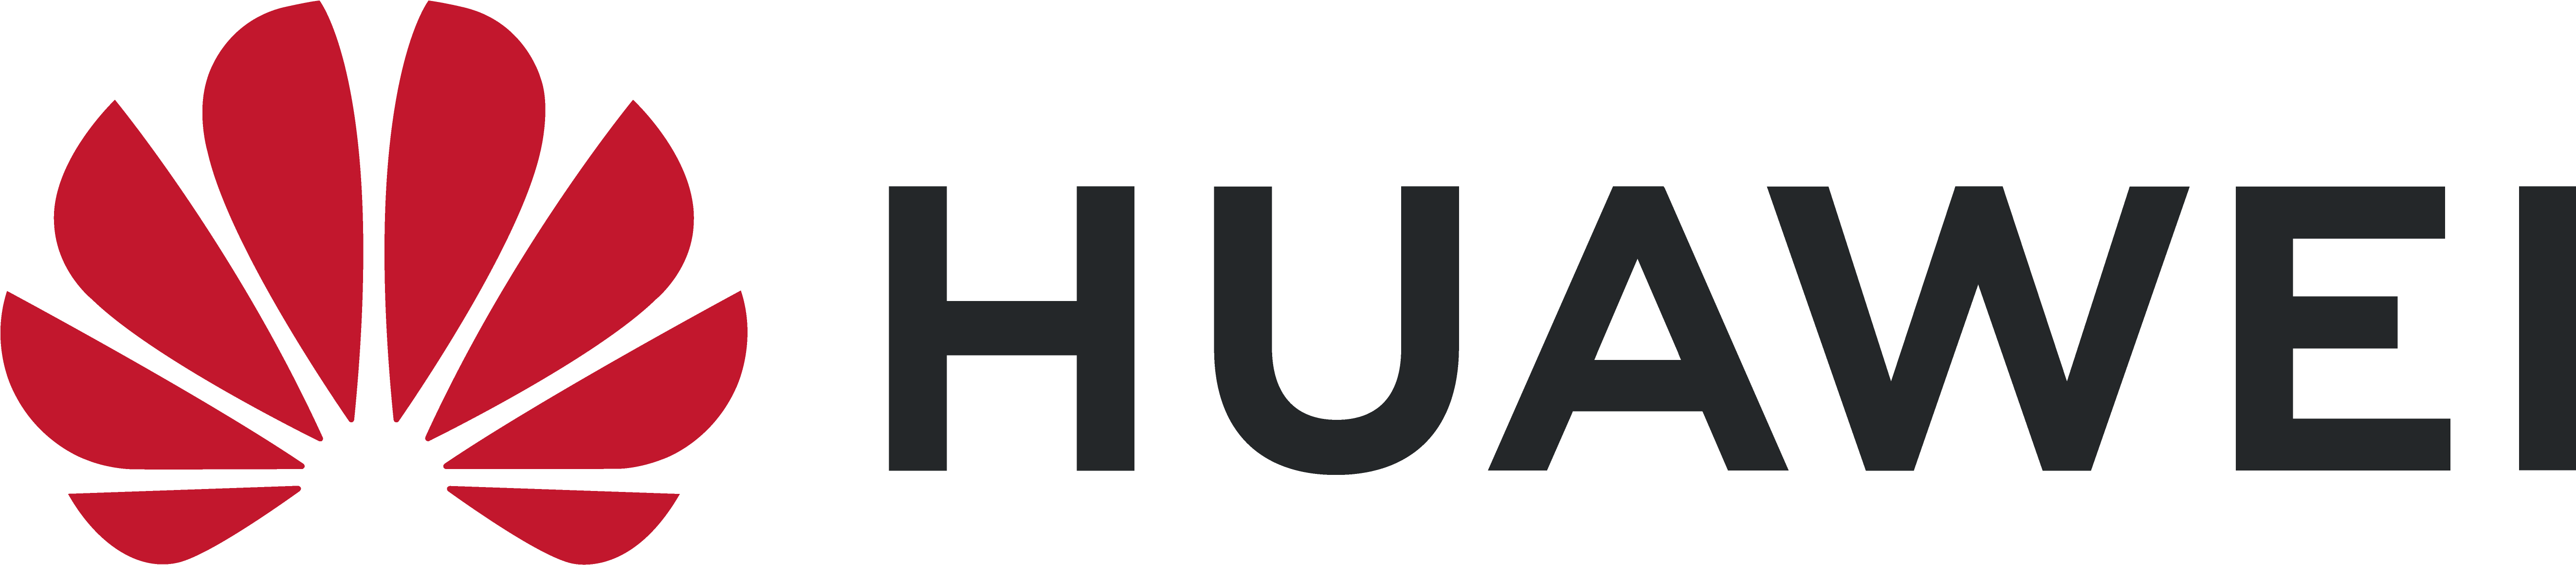 Huawei Logo Redand Grey PNG image